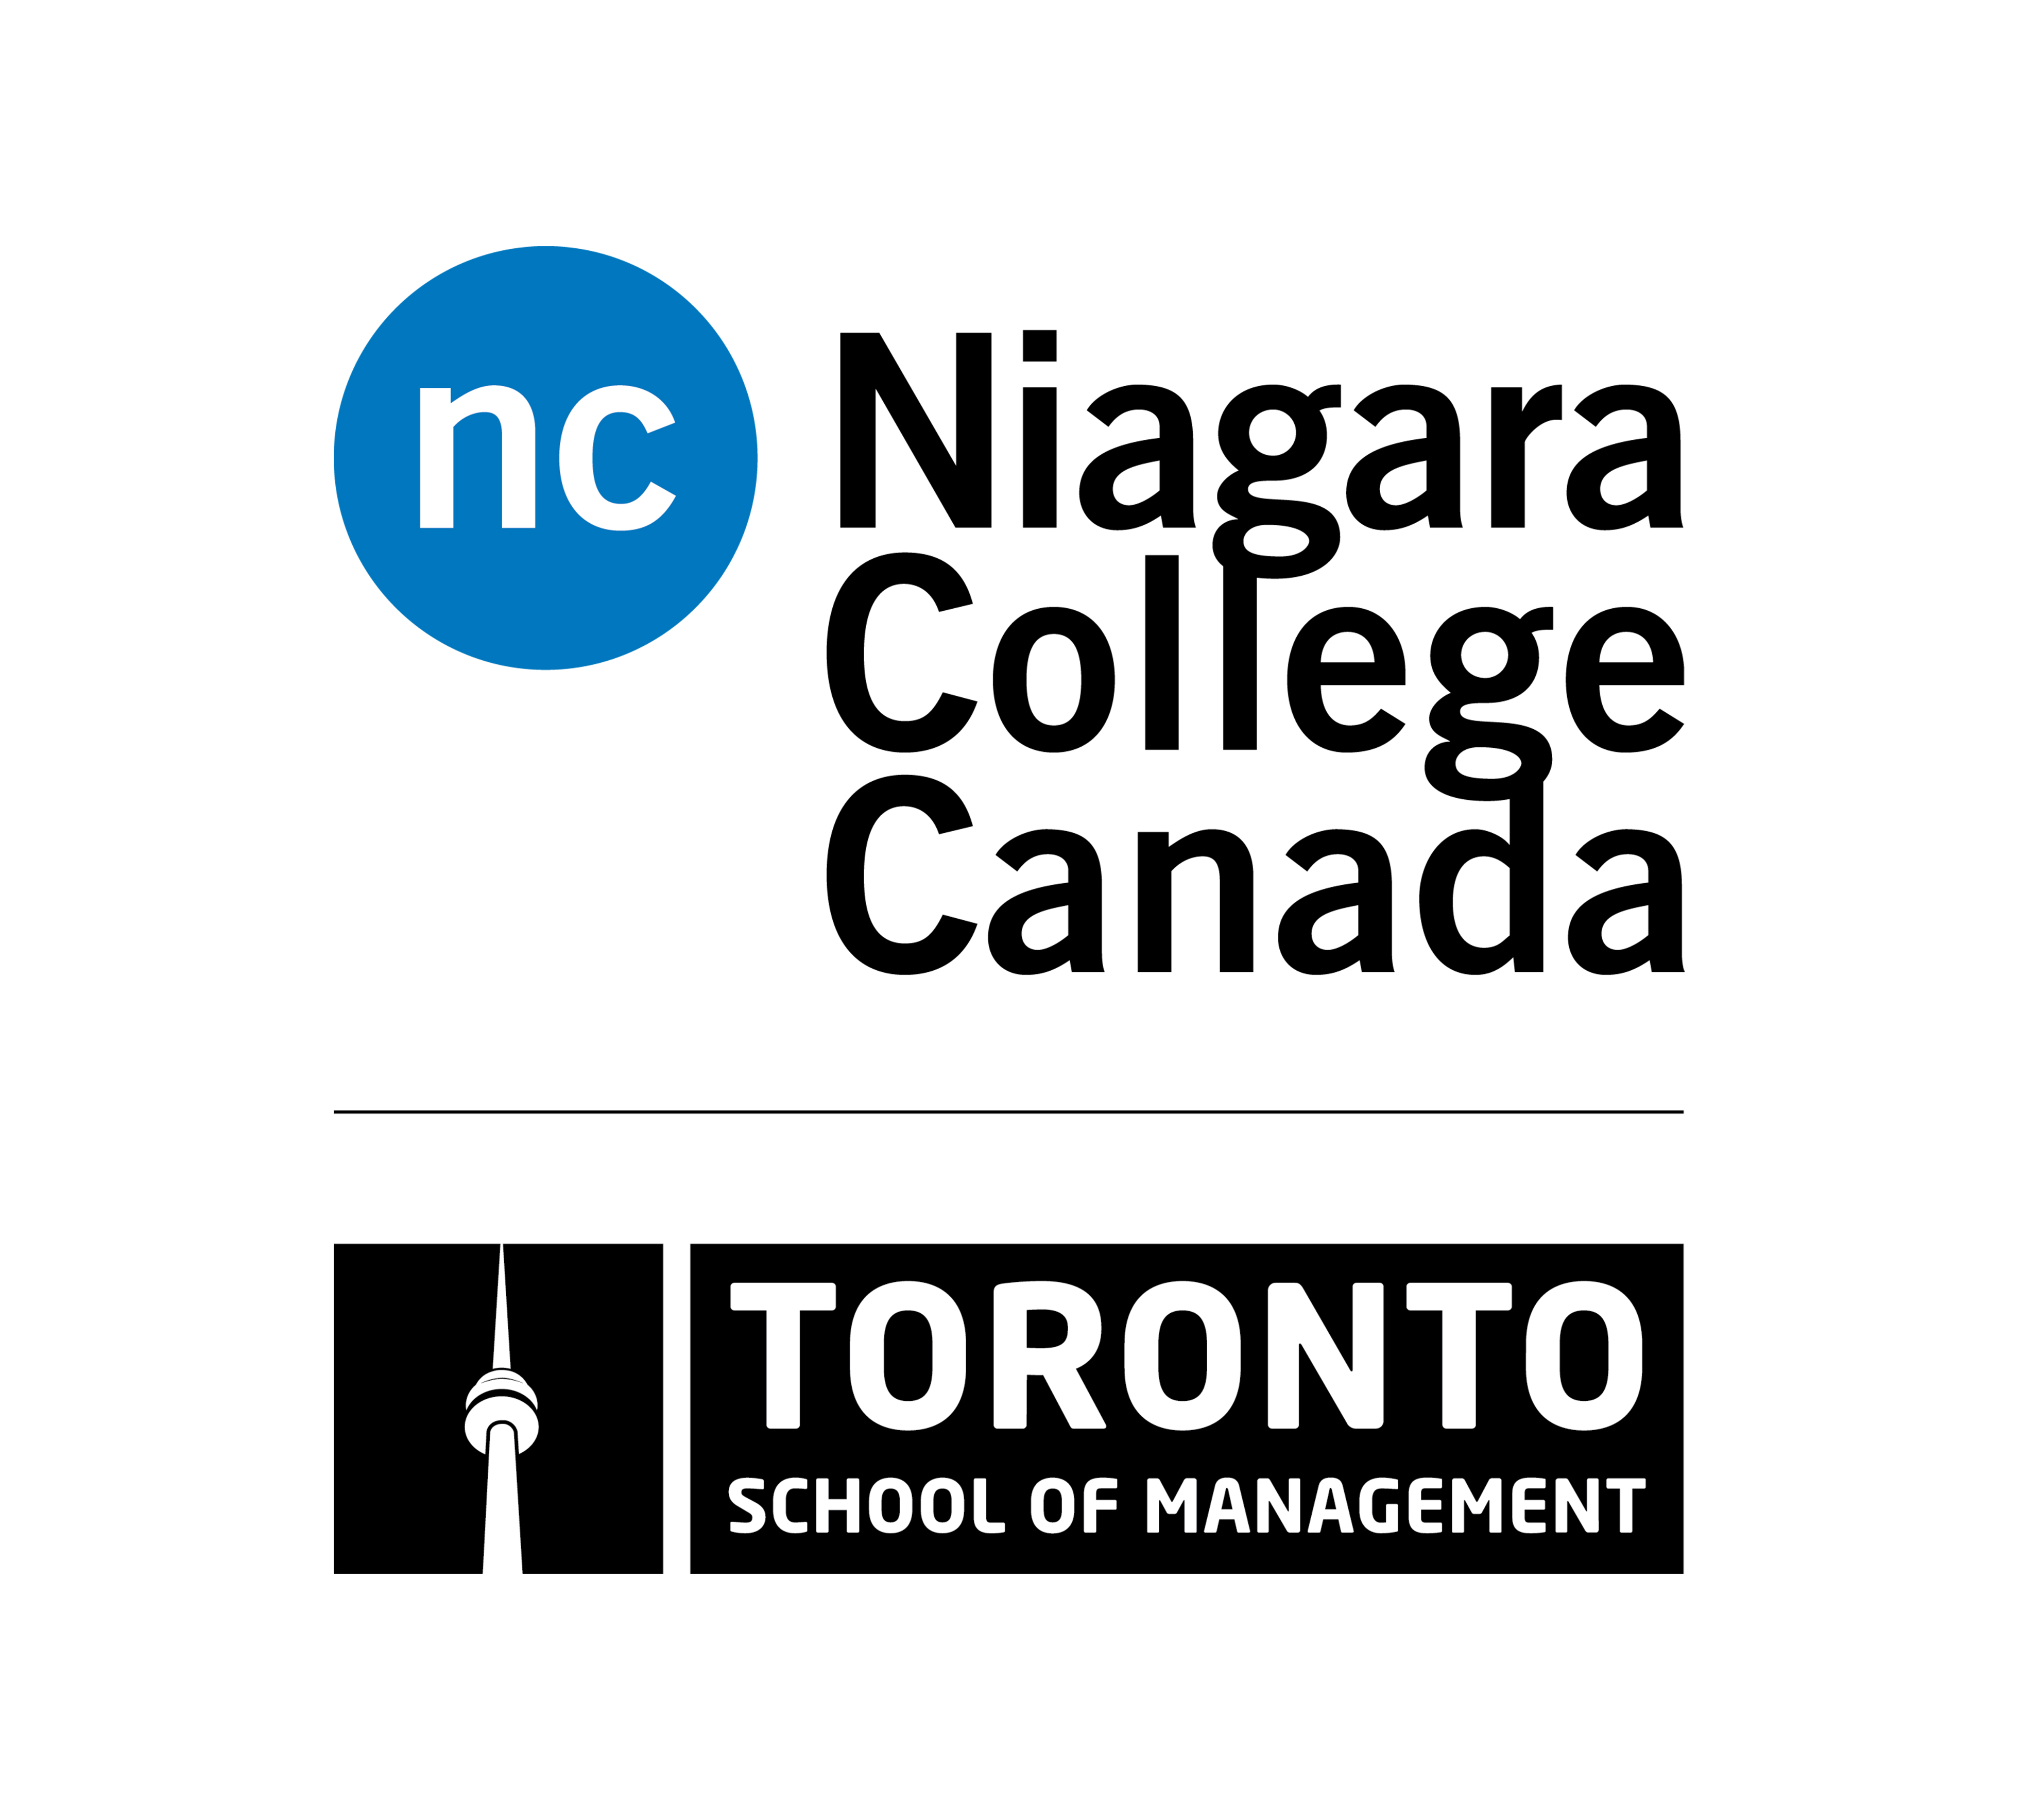 Niagara College Toronto